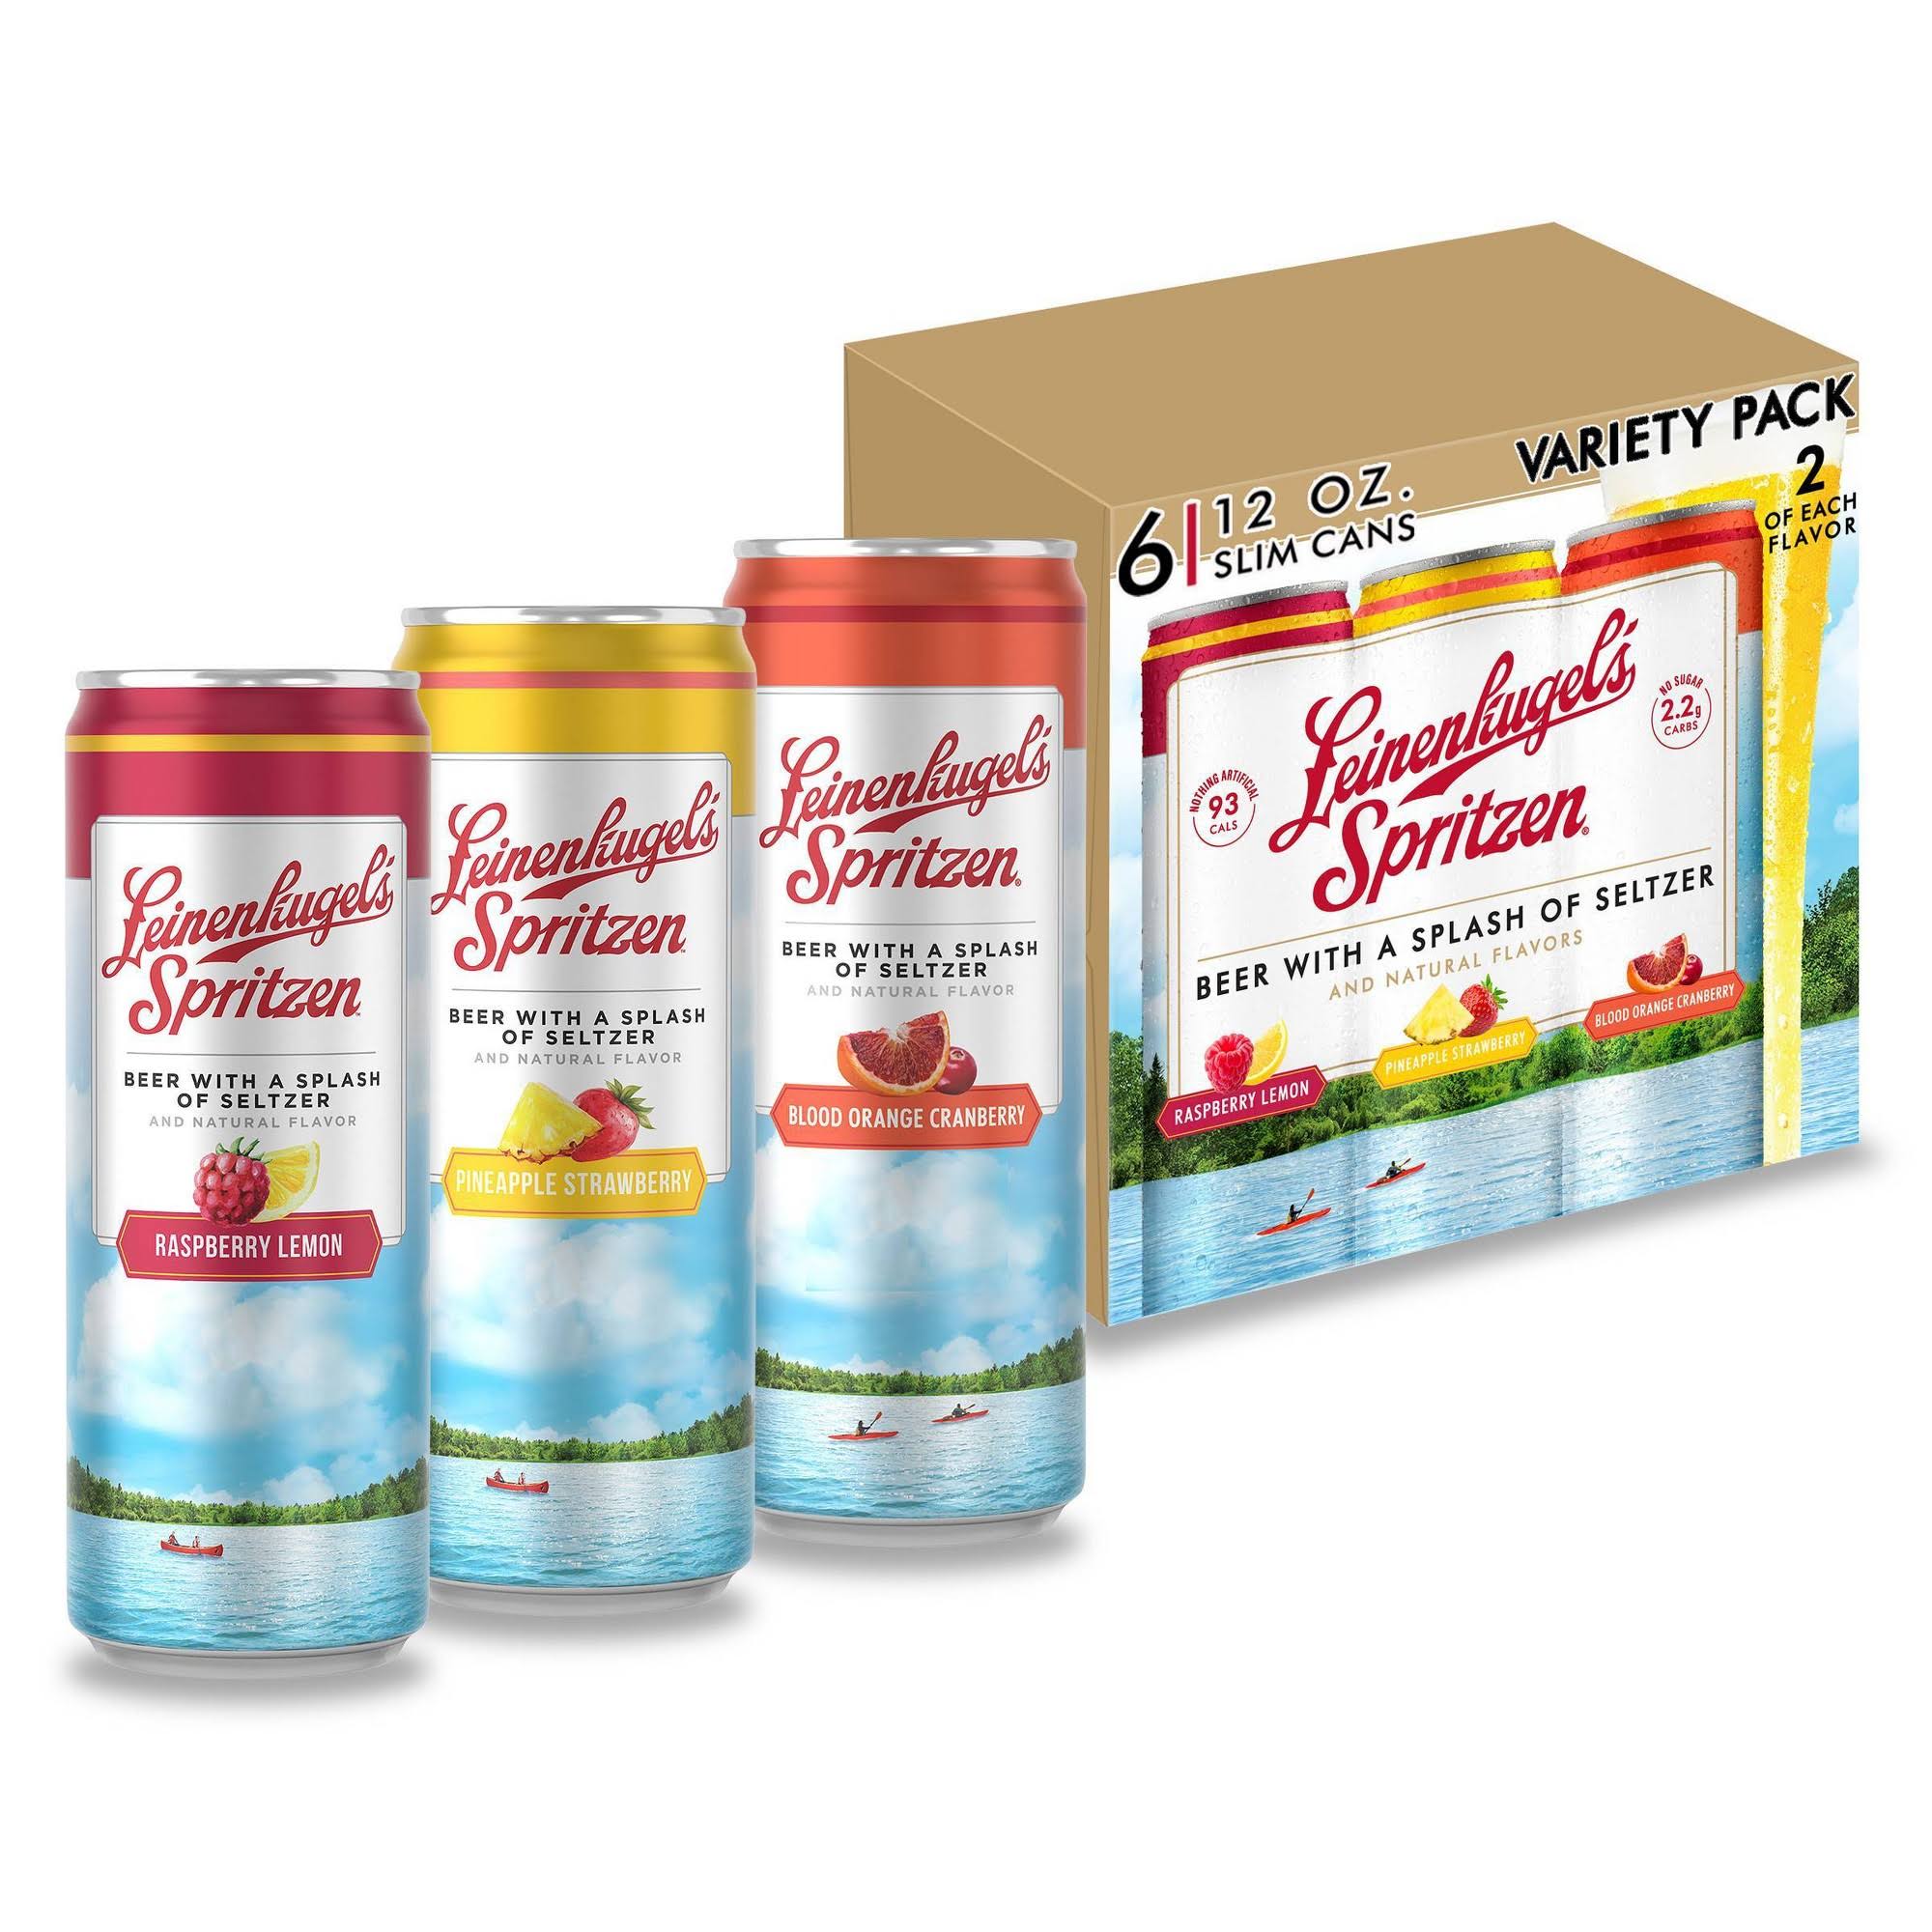 Leinenkugels Spritzen Spritzen Beer, Raspberry Lemon/Pineapple Strawberry/Blood Orange Cranberry, Variety Pack - 6 pack, 12 fl oz slim cans